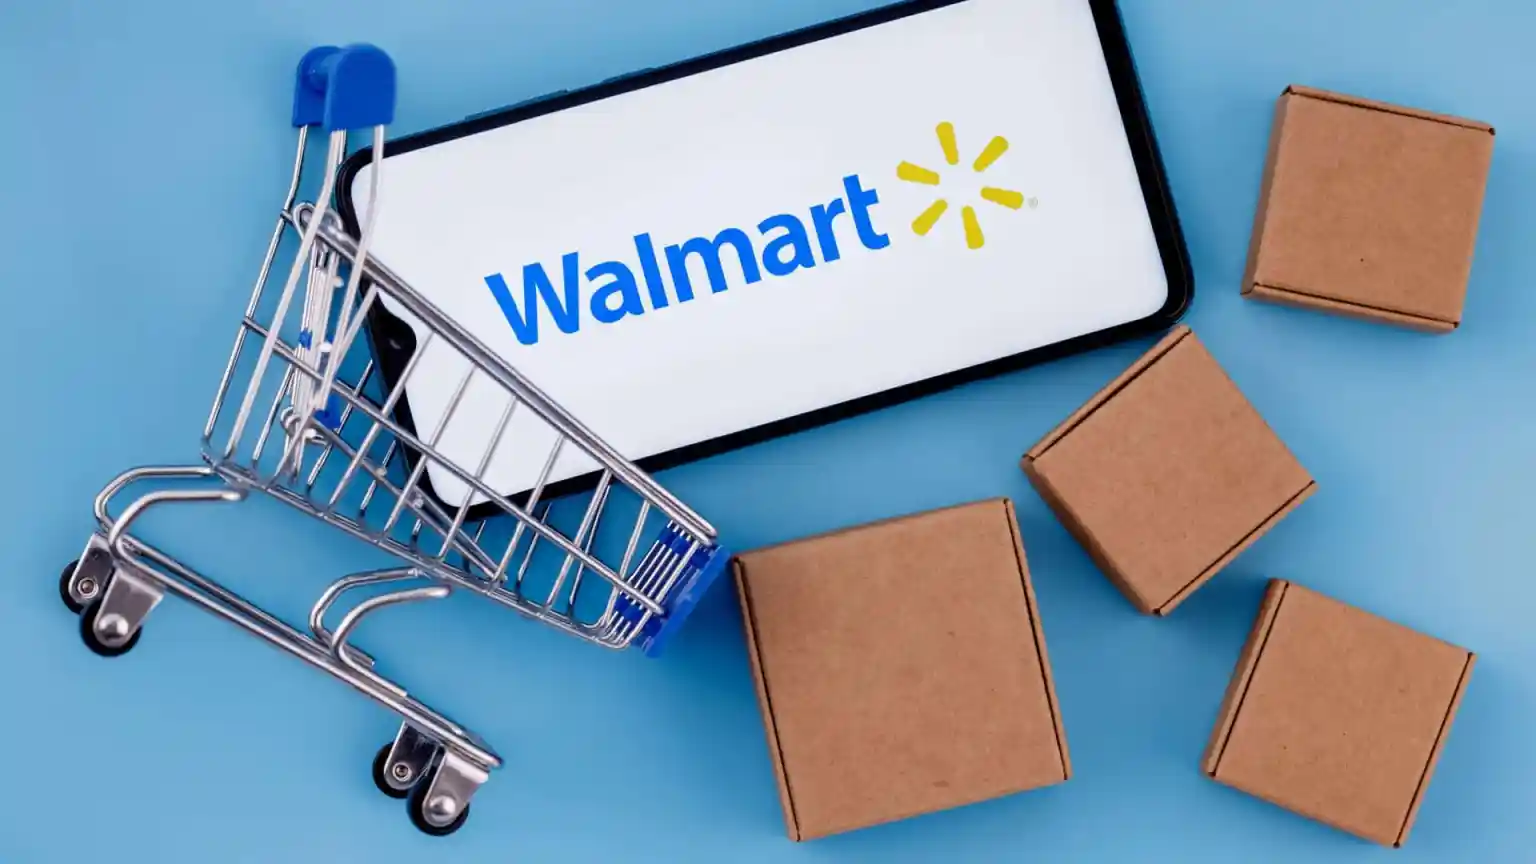 Walmart Marketplace Marketing and Optimization​